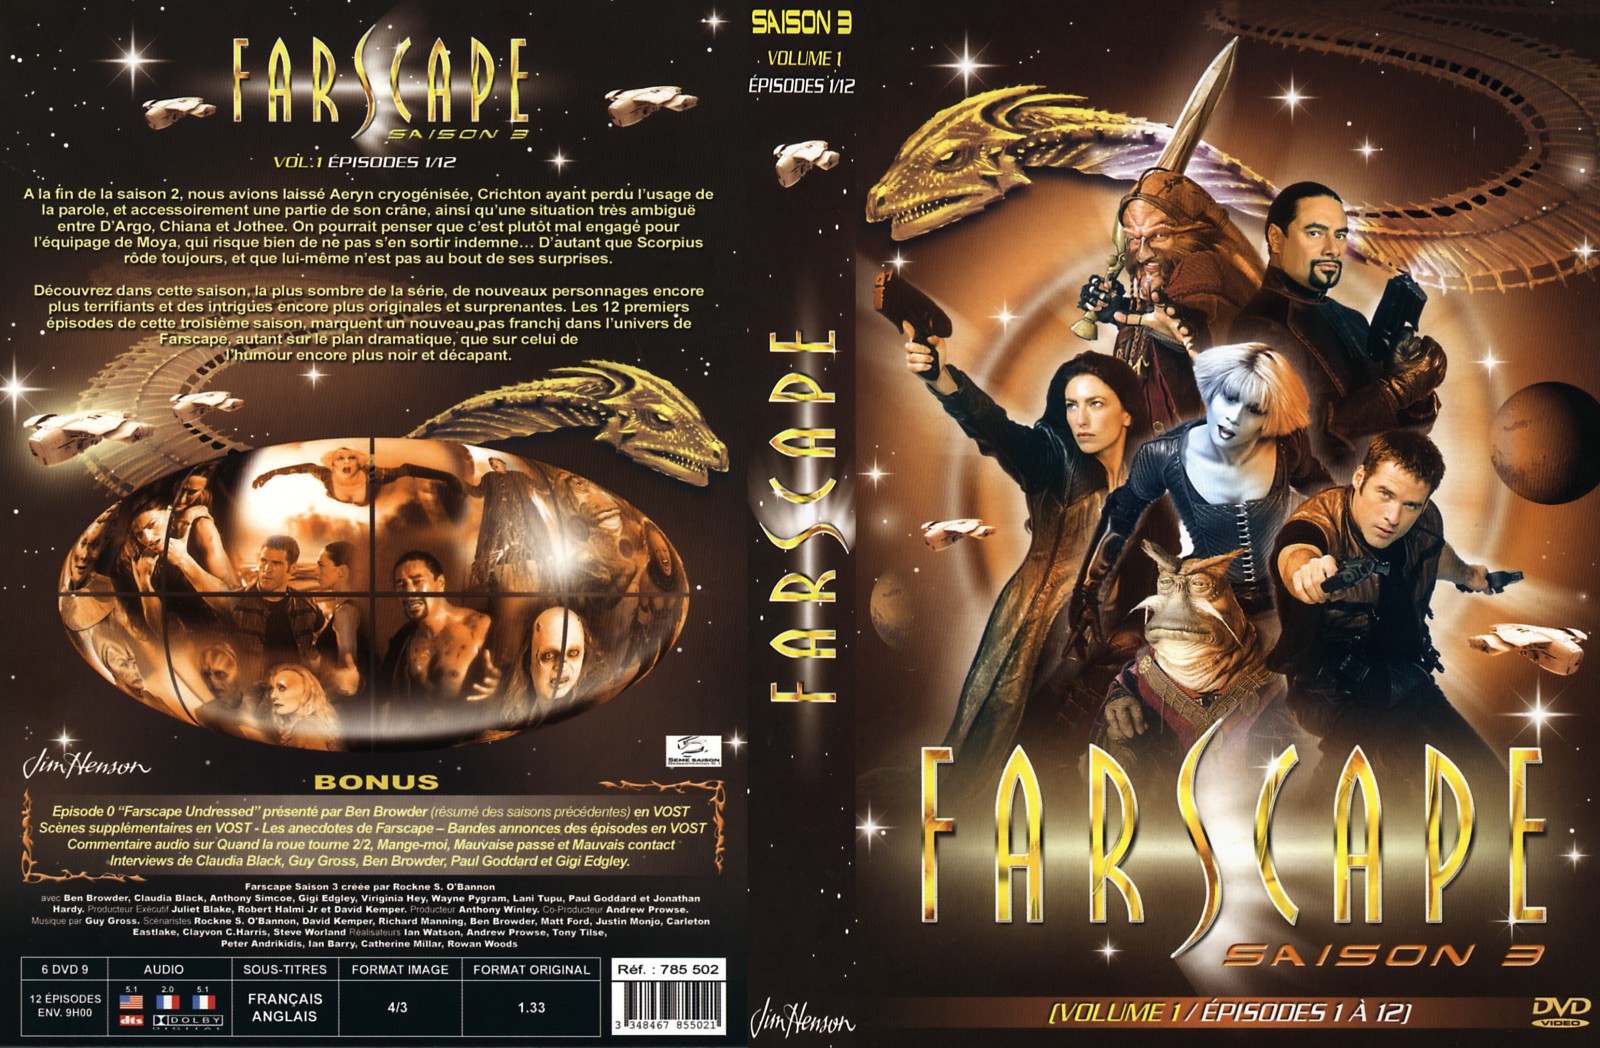 Jaquette DVD Farscape Saison 3 vol 1